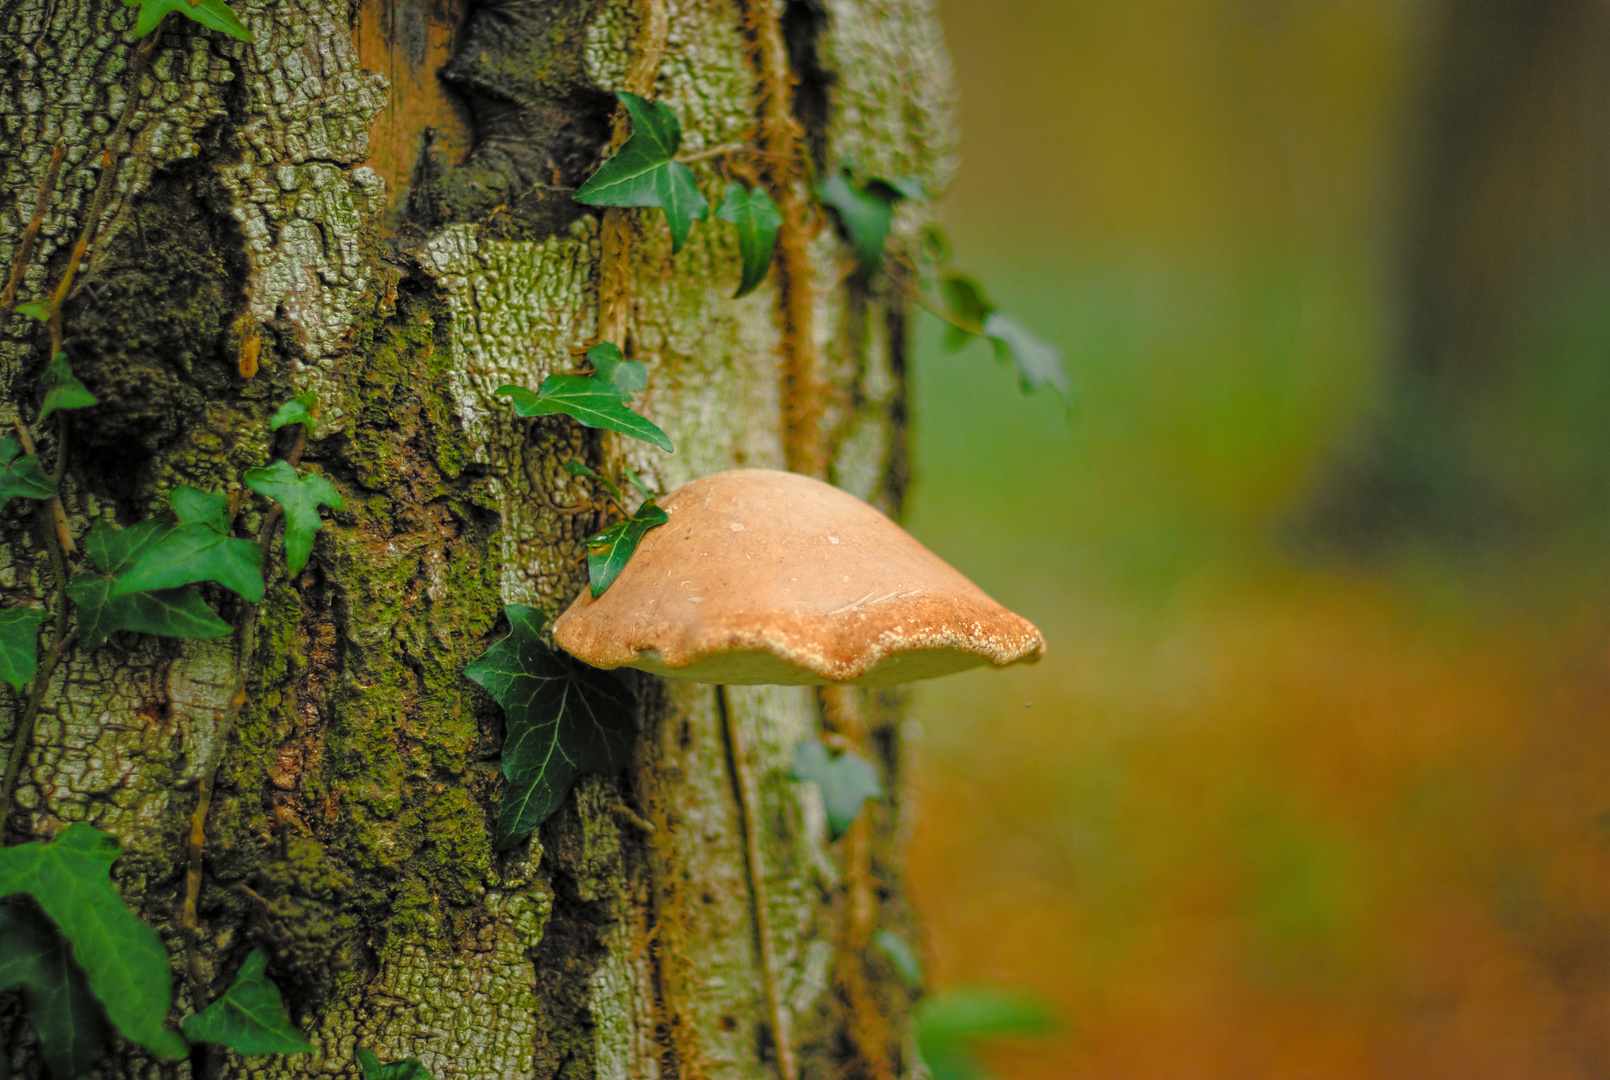 Le champignon sur l'arbre